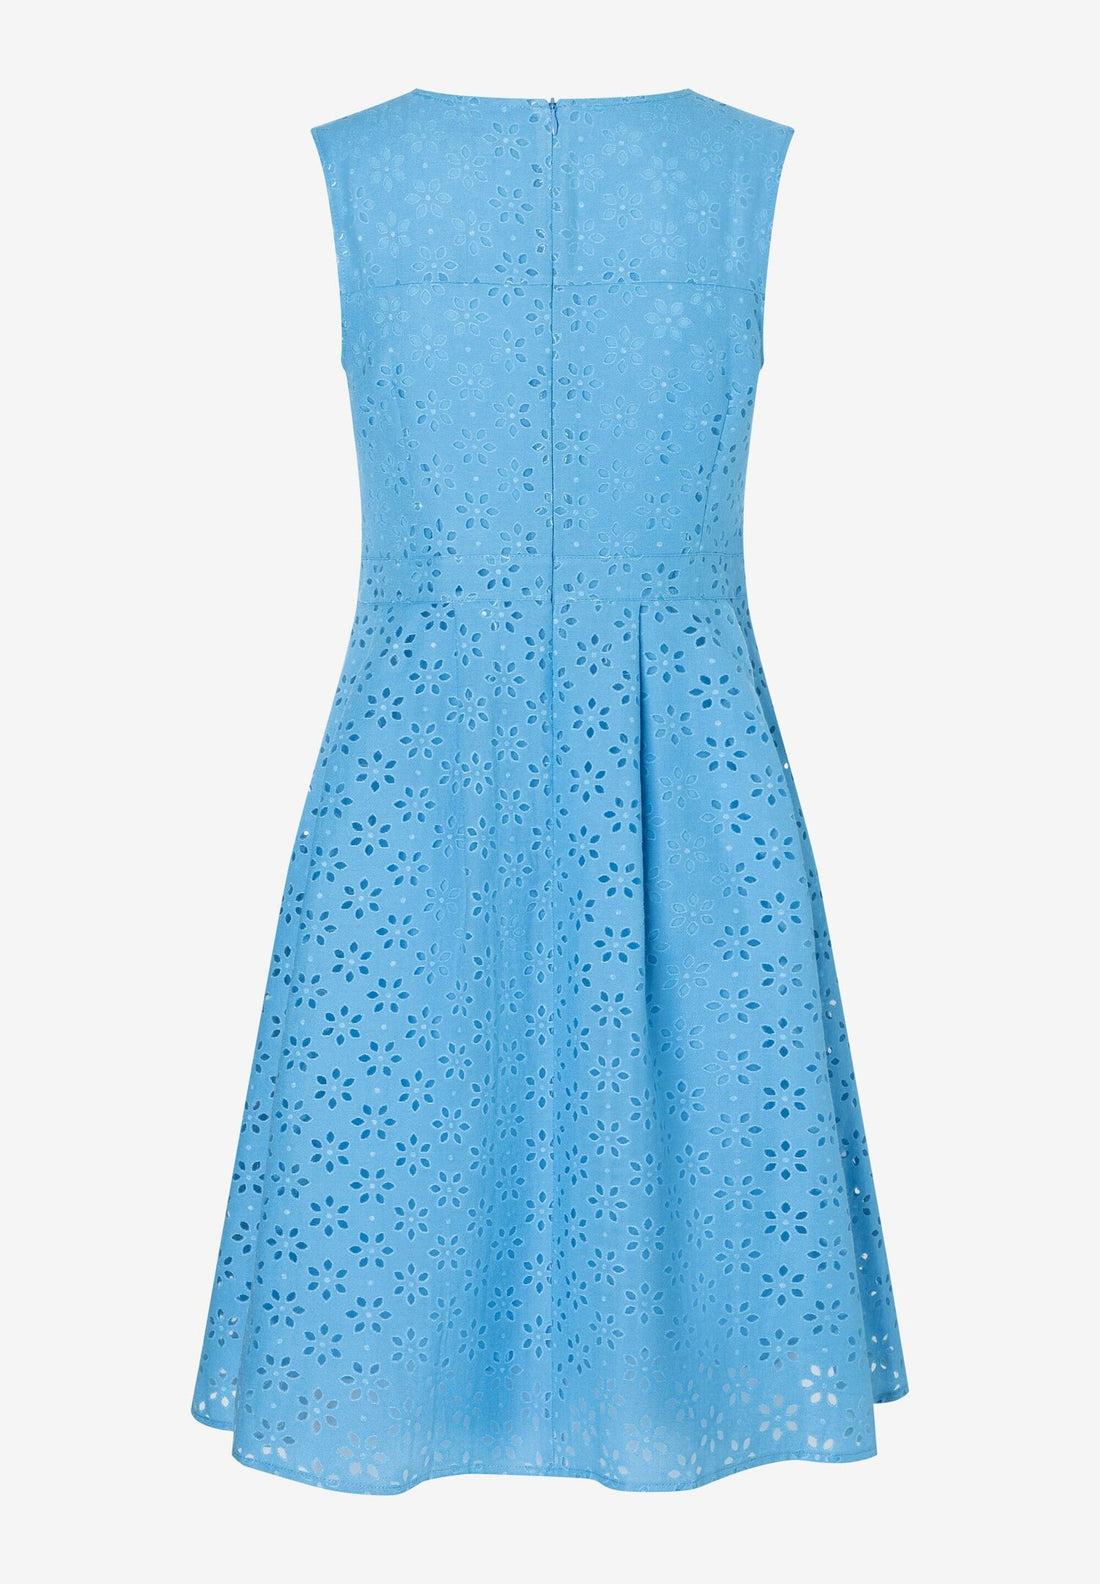 Blue Sleeveless A-Line Short Dress_02